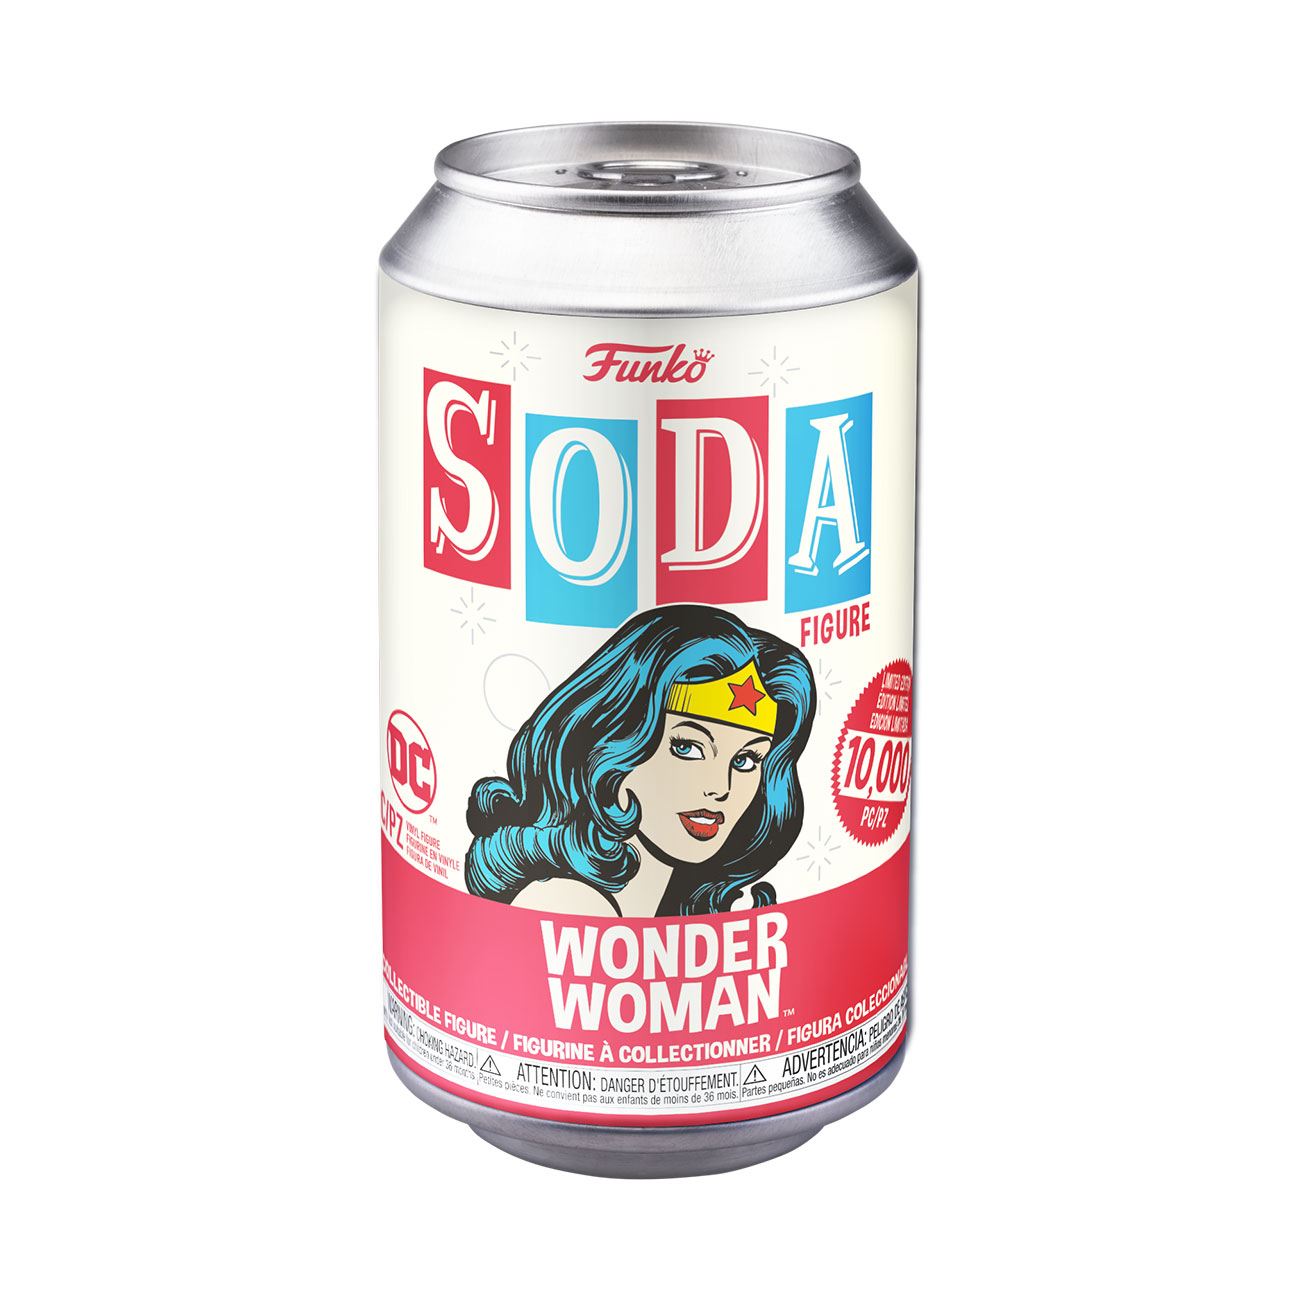 Funko Vinyl Soda - Wonder Woman 11 cm - DC Comics, Funko, limited edition, Soda, soda can, vinyl soda, Wonder Woman - Gadgetz Home